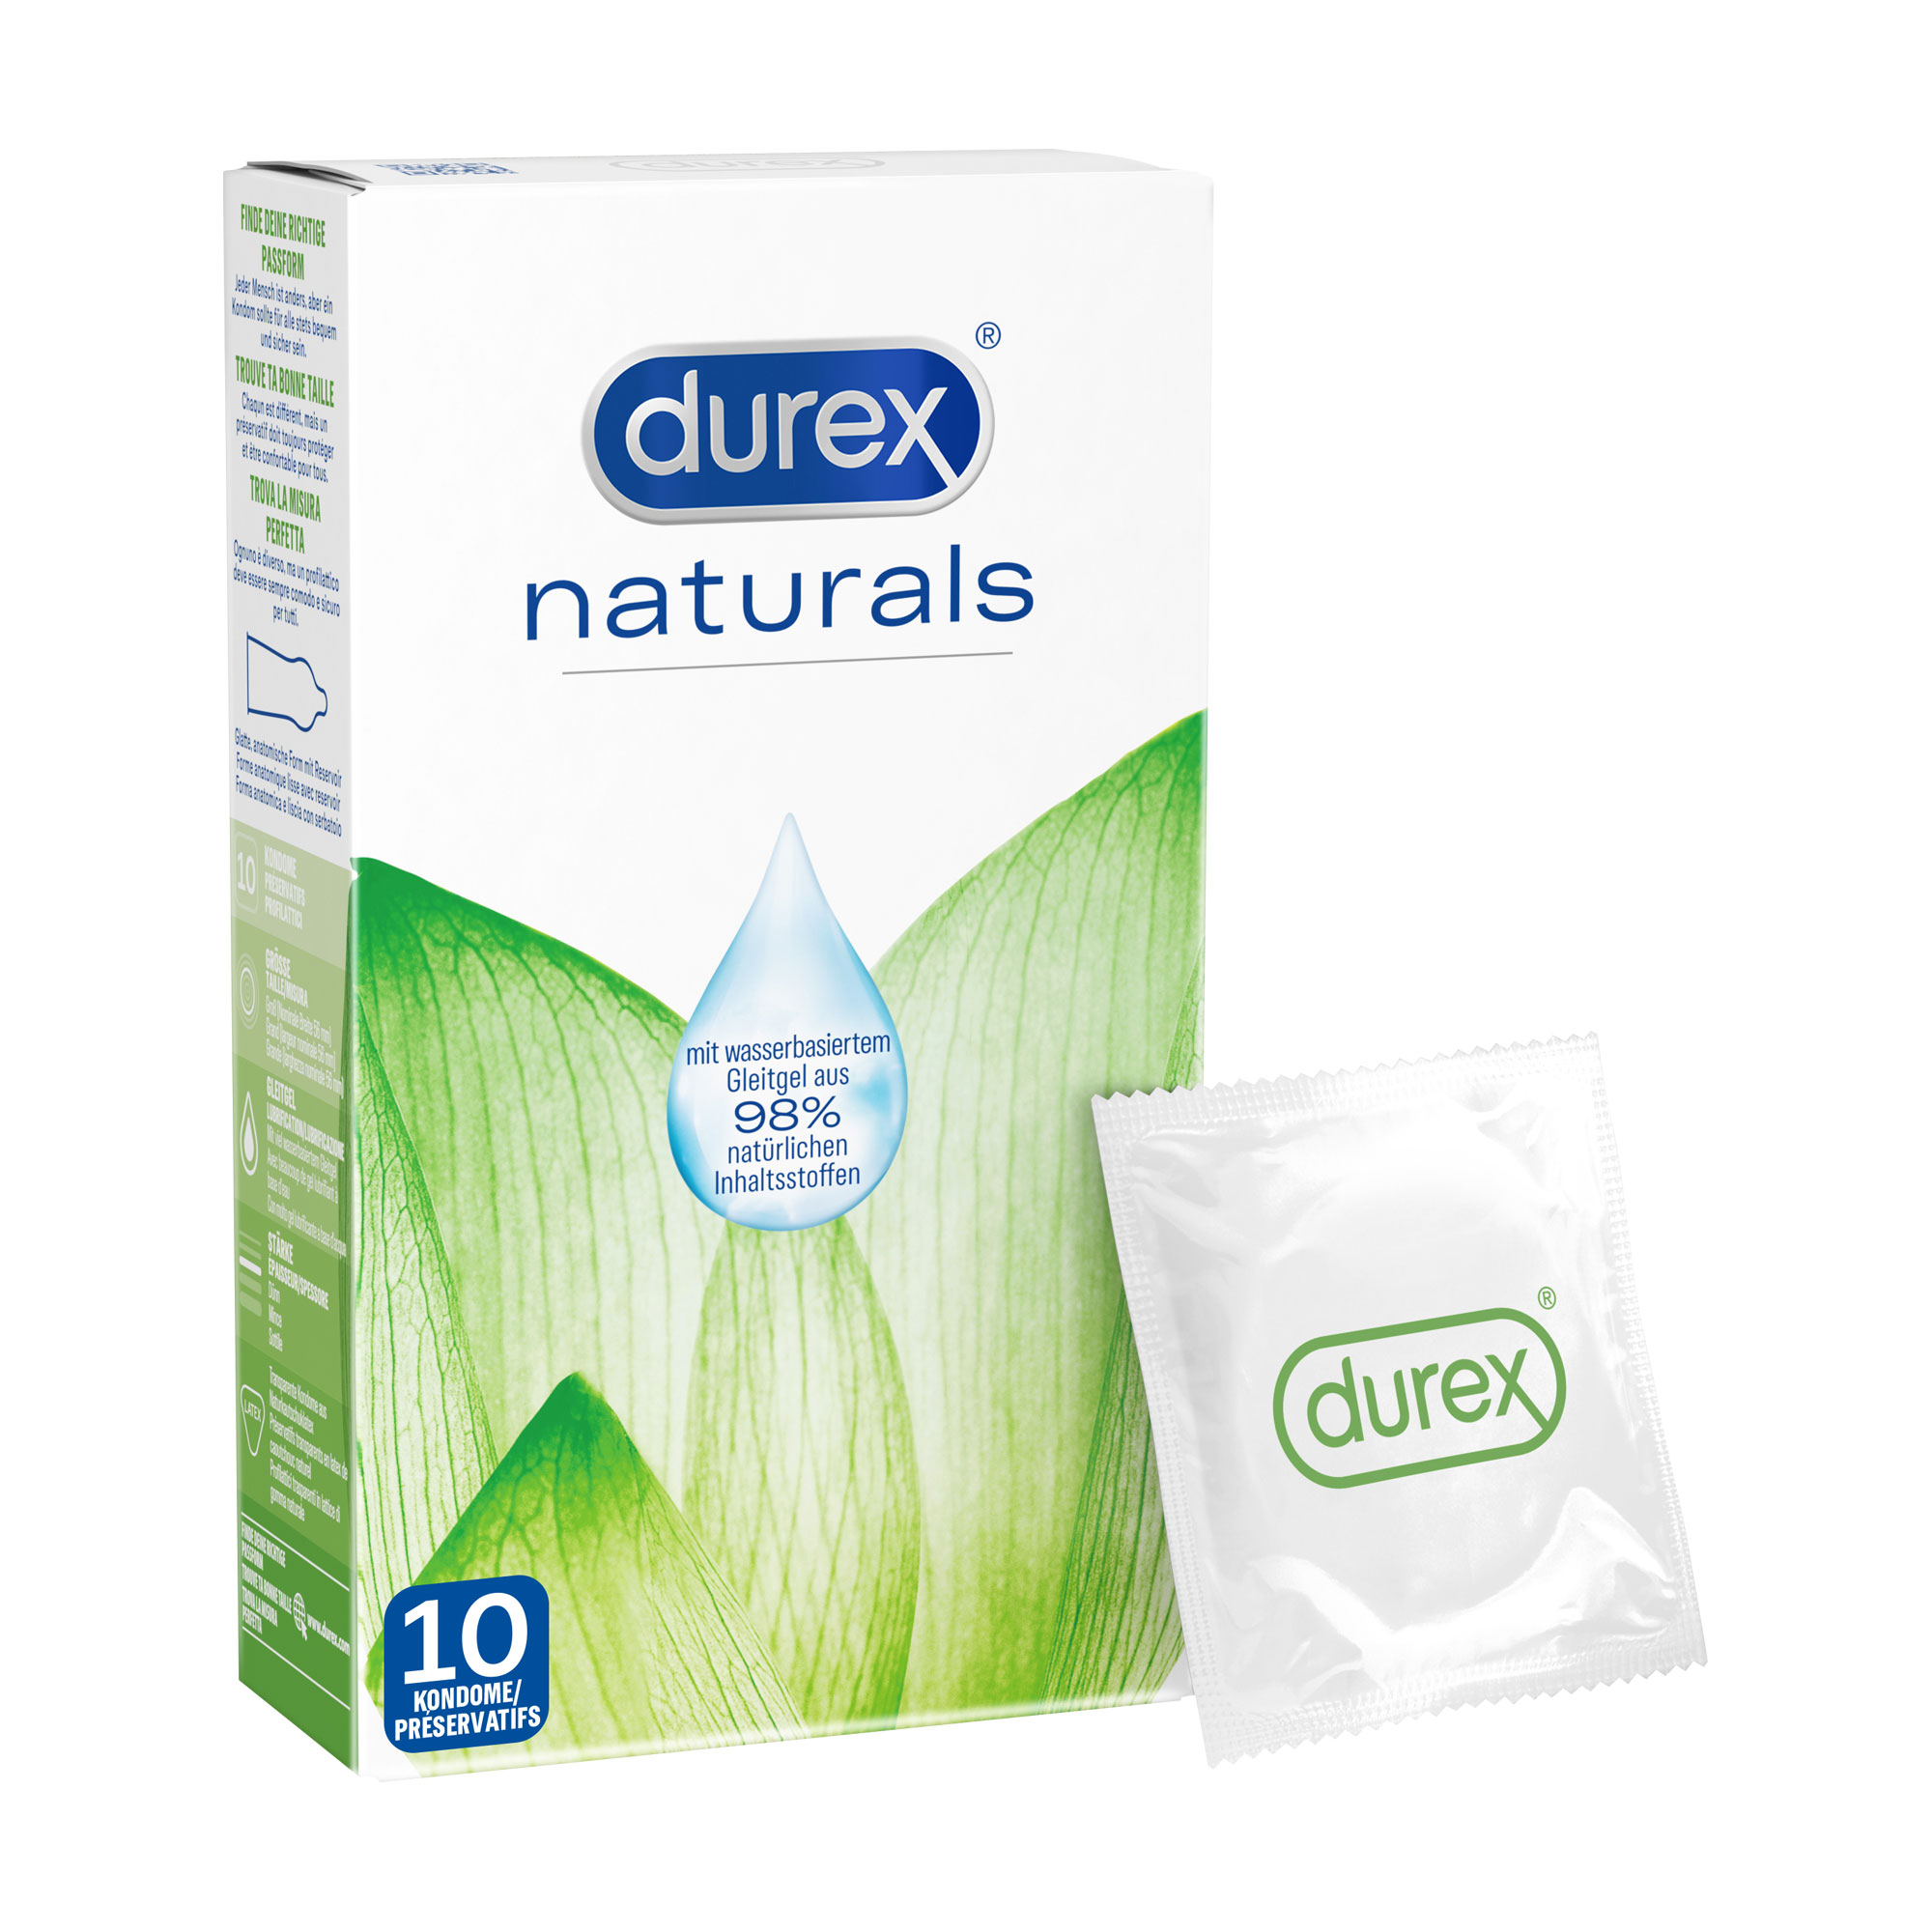 Kondome mit wasserbasierter Gleitgelbeschichtung aus 98% natürlichen Inhaltsstoffen.